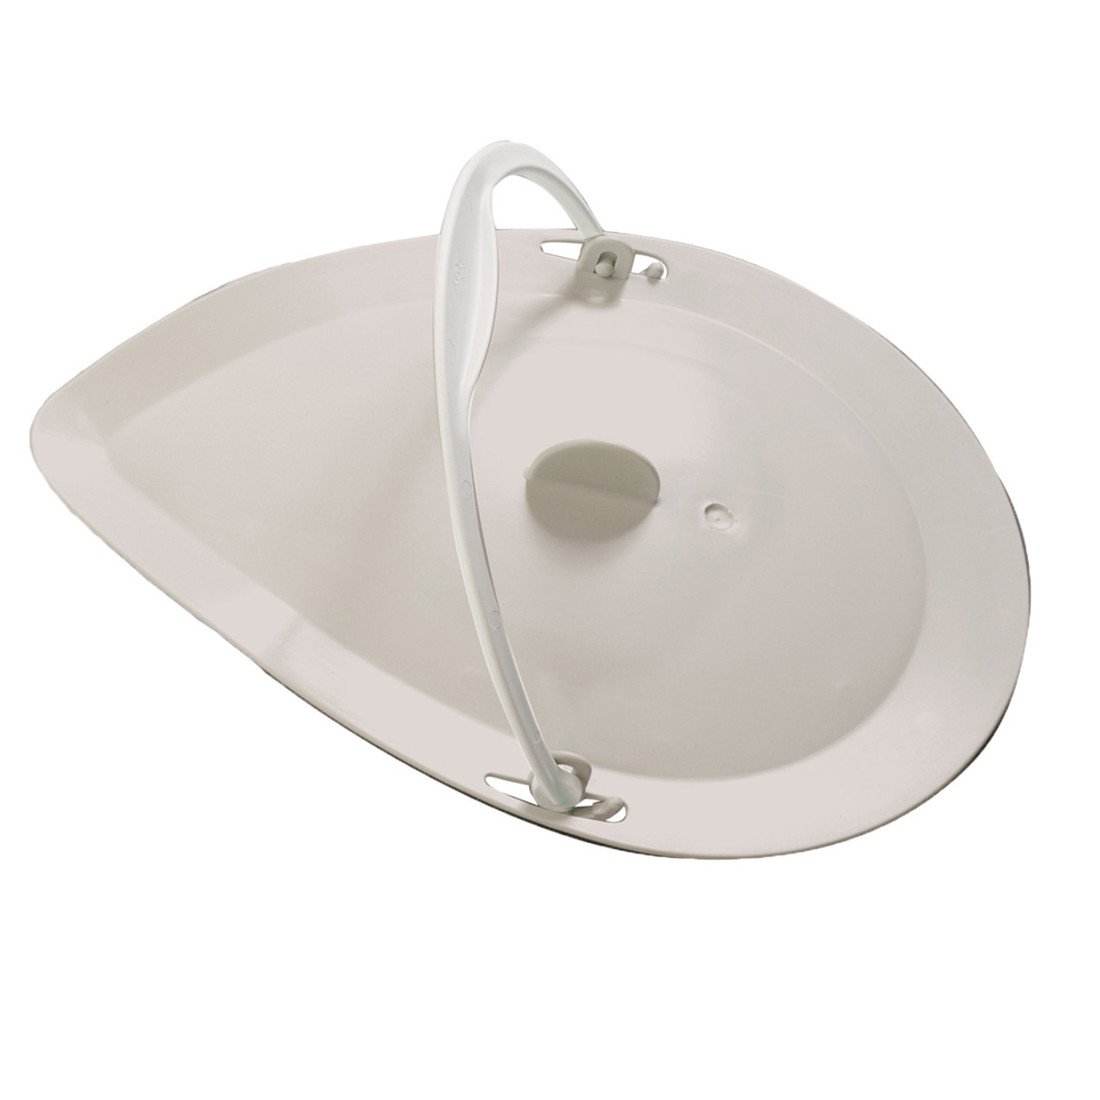 Etac-Clean-Bedpan-lid-with-handle-main_553851.jpg